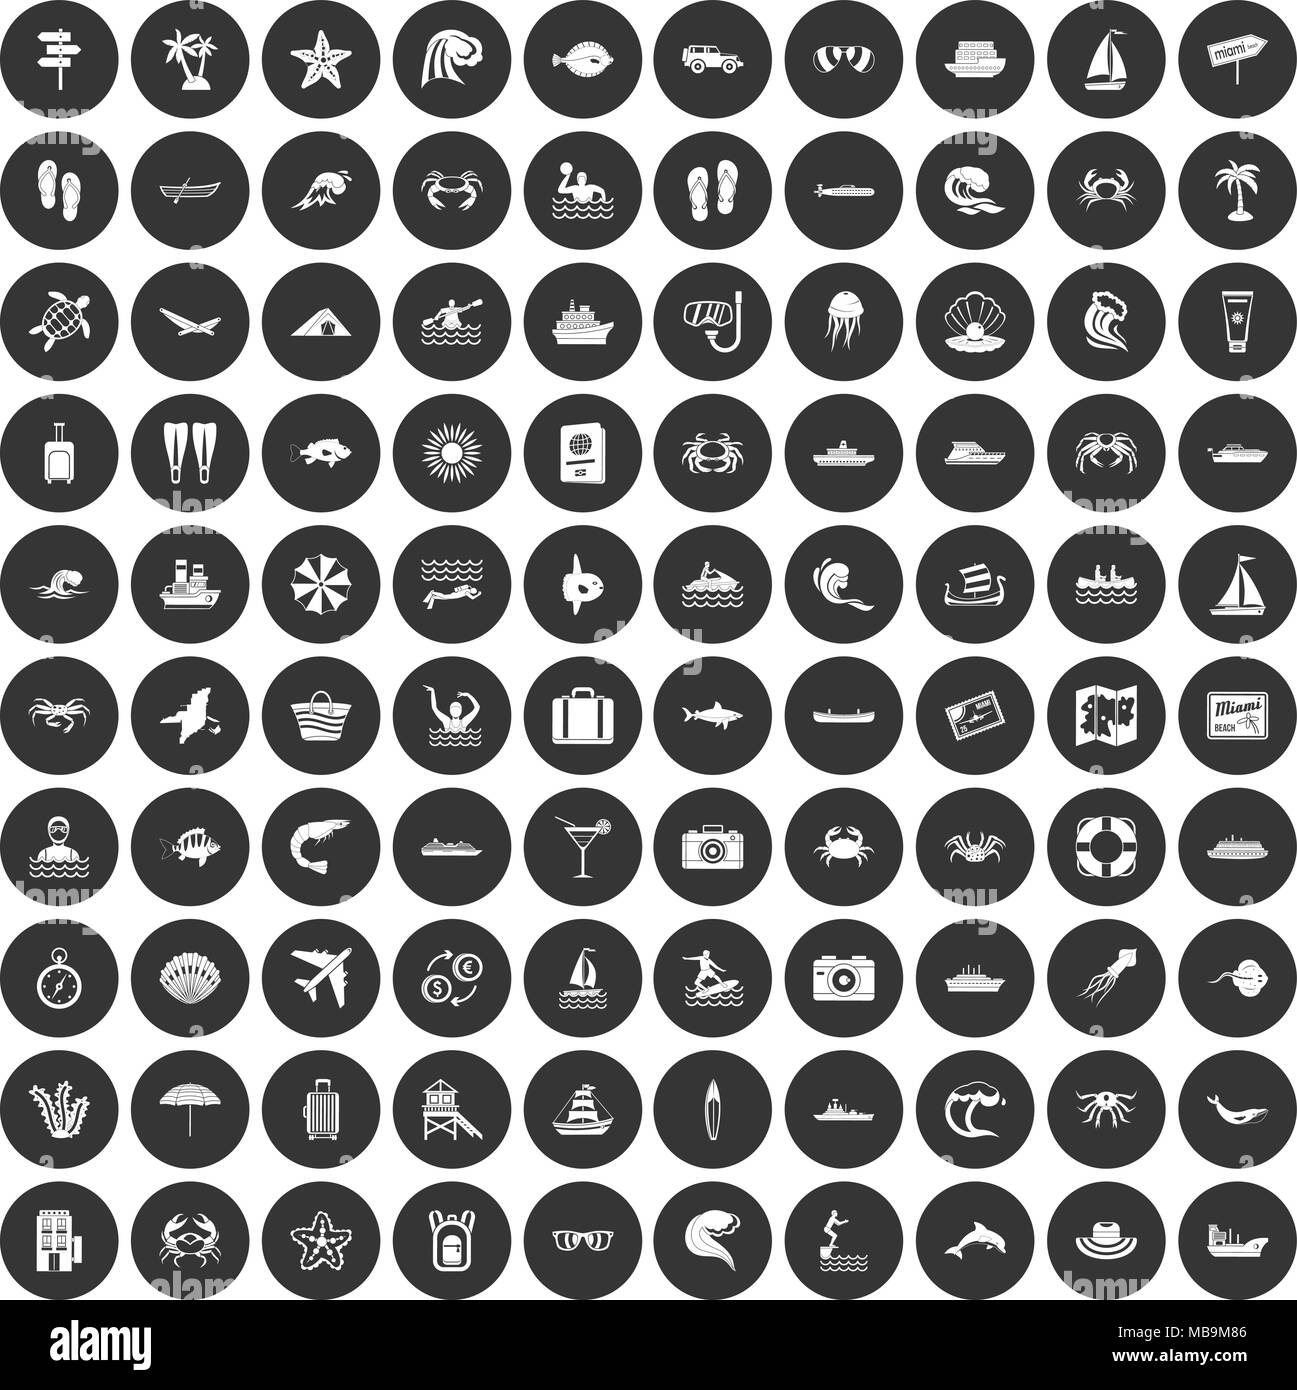 100 Sea Life Icons Set schwarz Kreis Stock Vektor